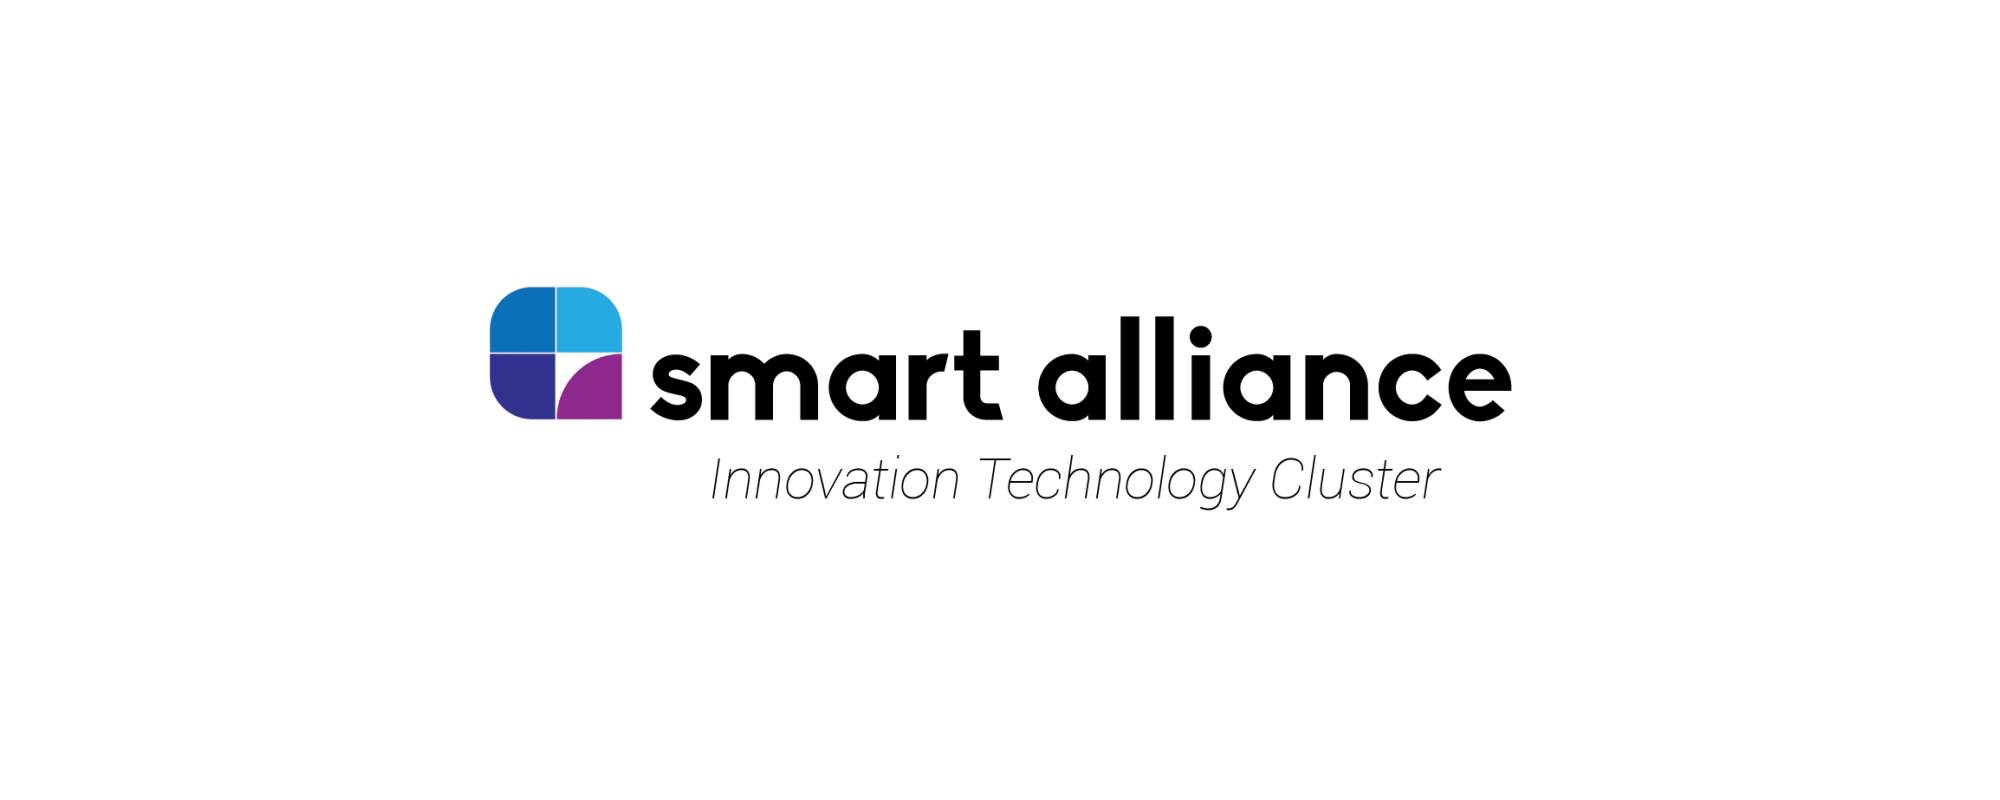 Smart Alliance, cel mai mare Cluster IT&C pe piata din Romania isi deschide oficial portile pentru parteneri de business